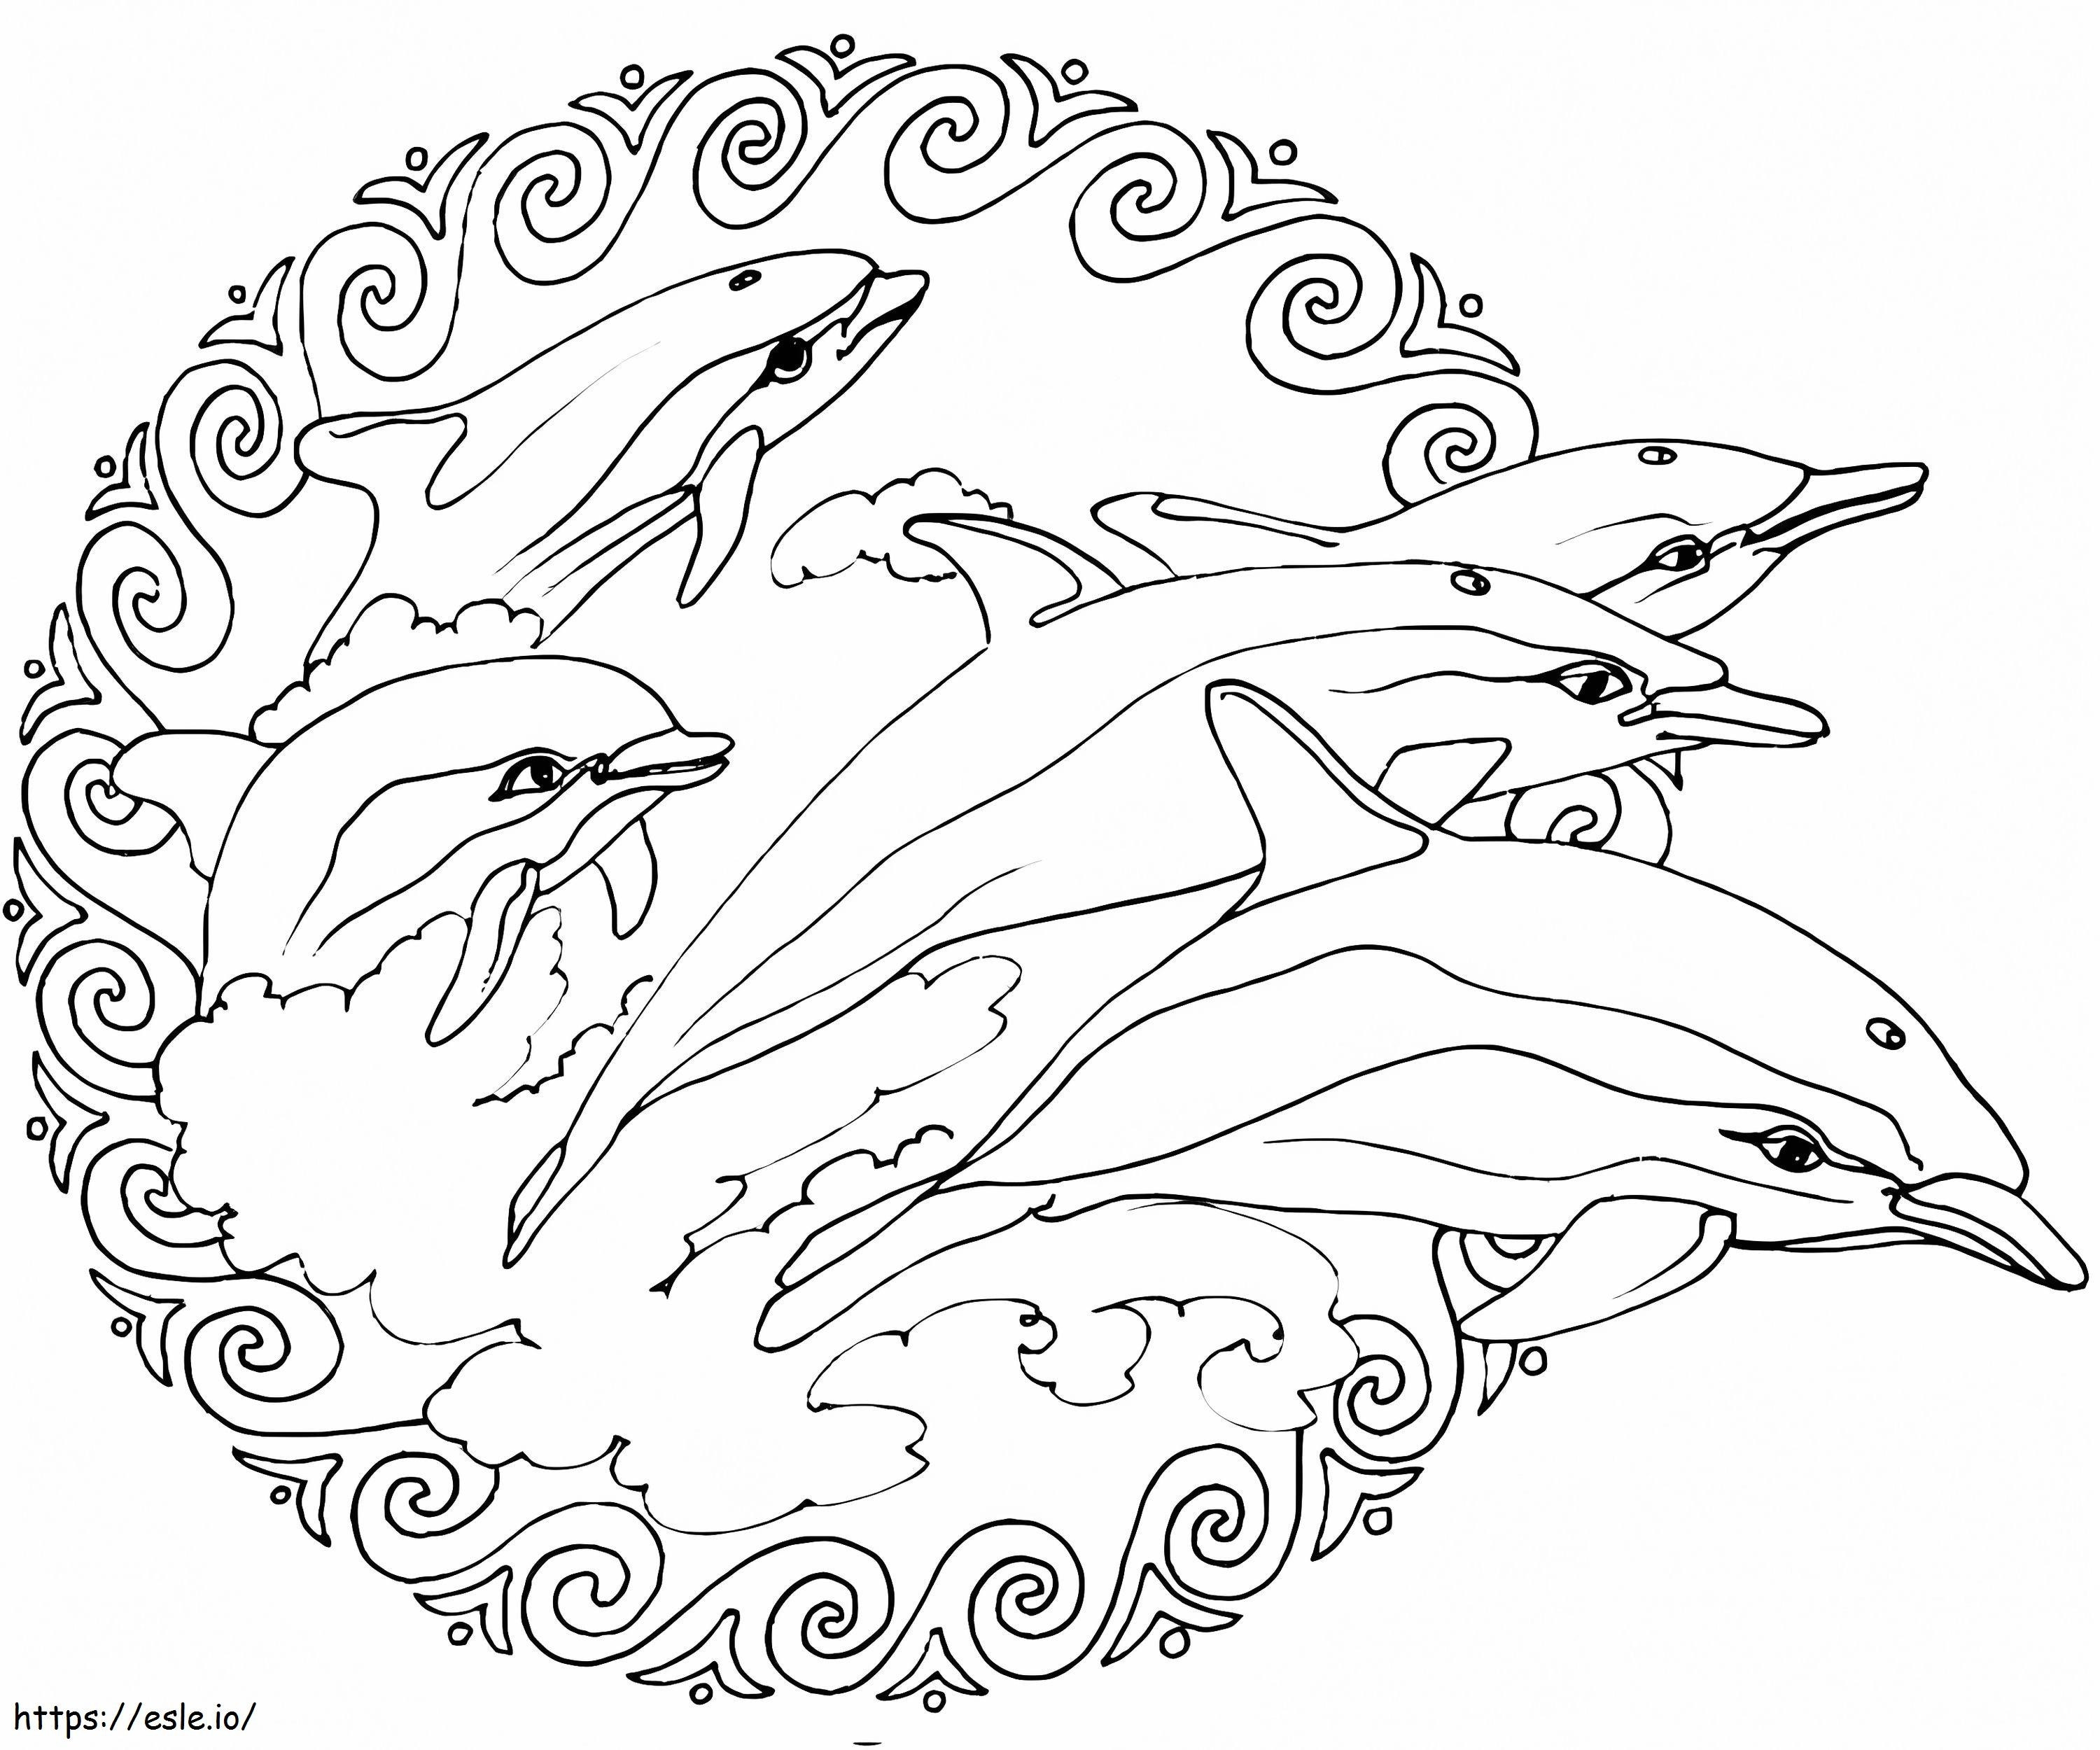 Delfin-Tiere-Mandala ausmalbilder